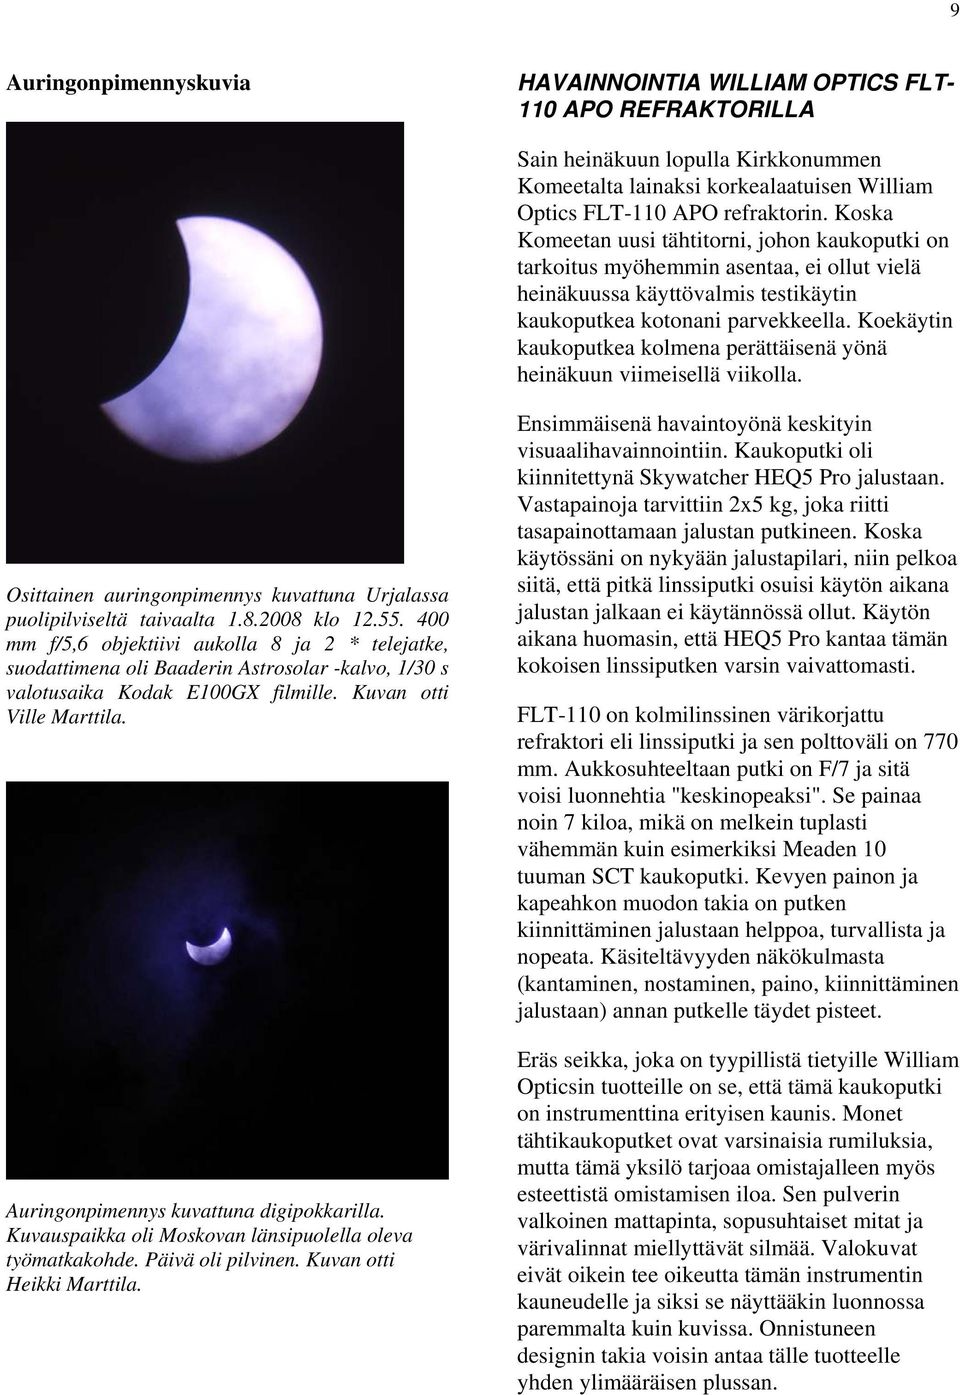 Koekäytin kaukoputkea kolmena perättäisenä yönä heinäkuun viimeisellä viikolla. Osittainen auringonpimennys kuvattuna Urjalassa puolipilviseltä taivaalta 1.8.2008 klo 12.55.